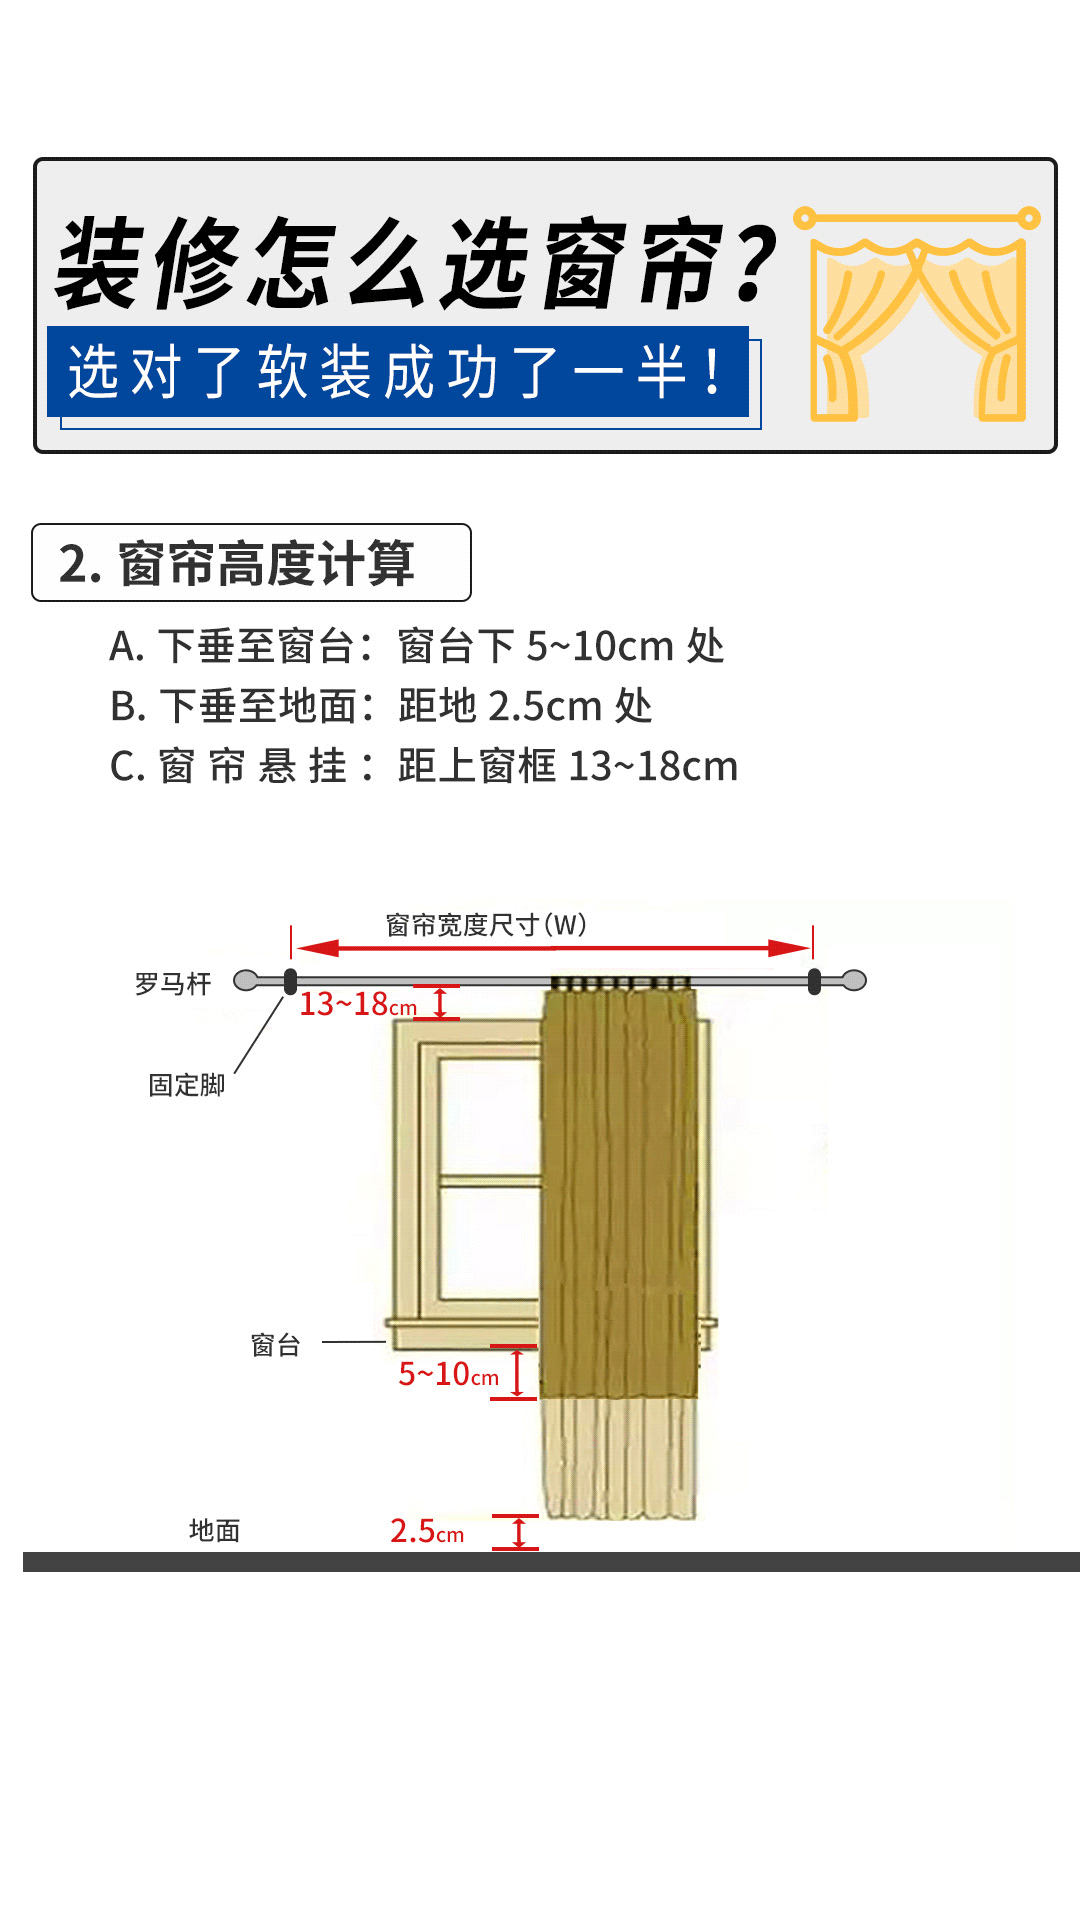 第一步:窗帘宽度计算 a,尺寸测量:窗户宽度左右两边各加上15cm b,买